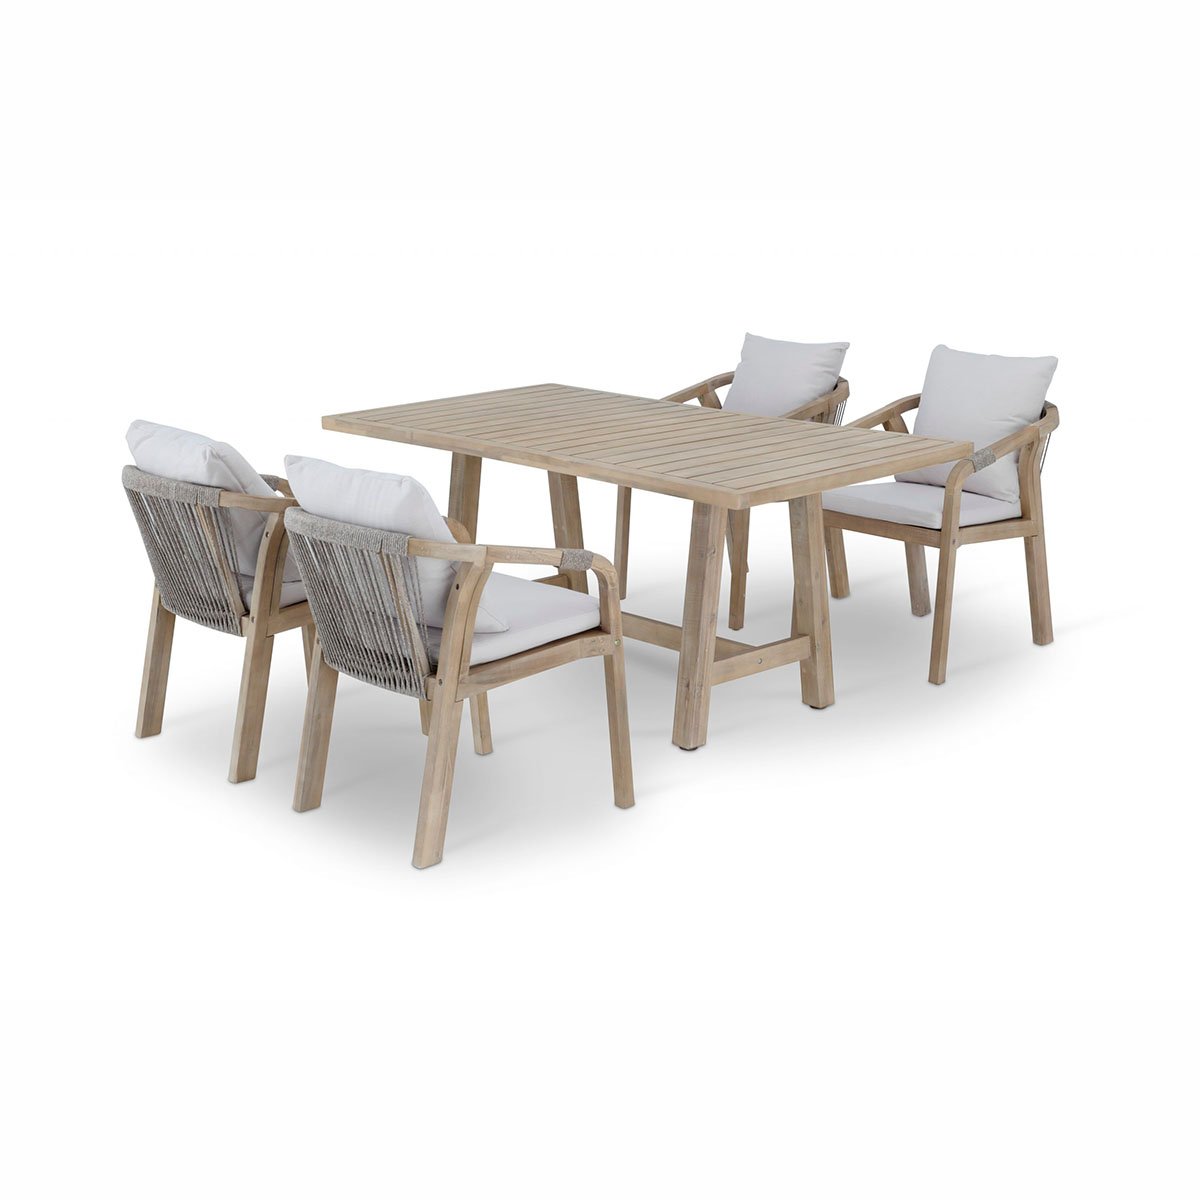 Conjunto mesa HANOI 160x90 y sillas de madera para exterior